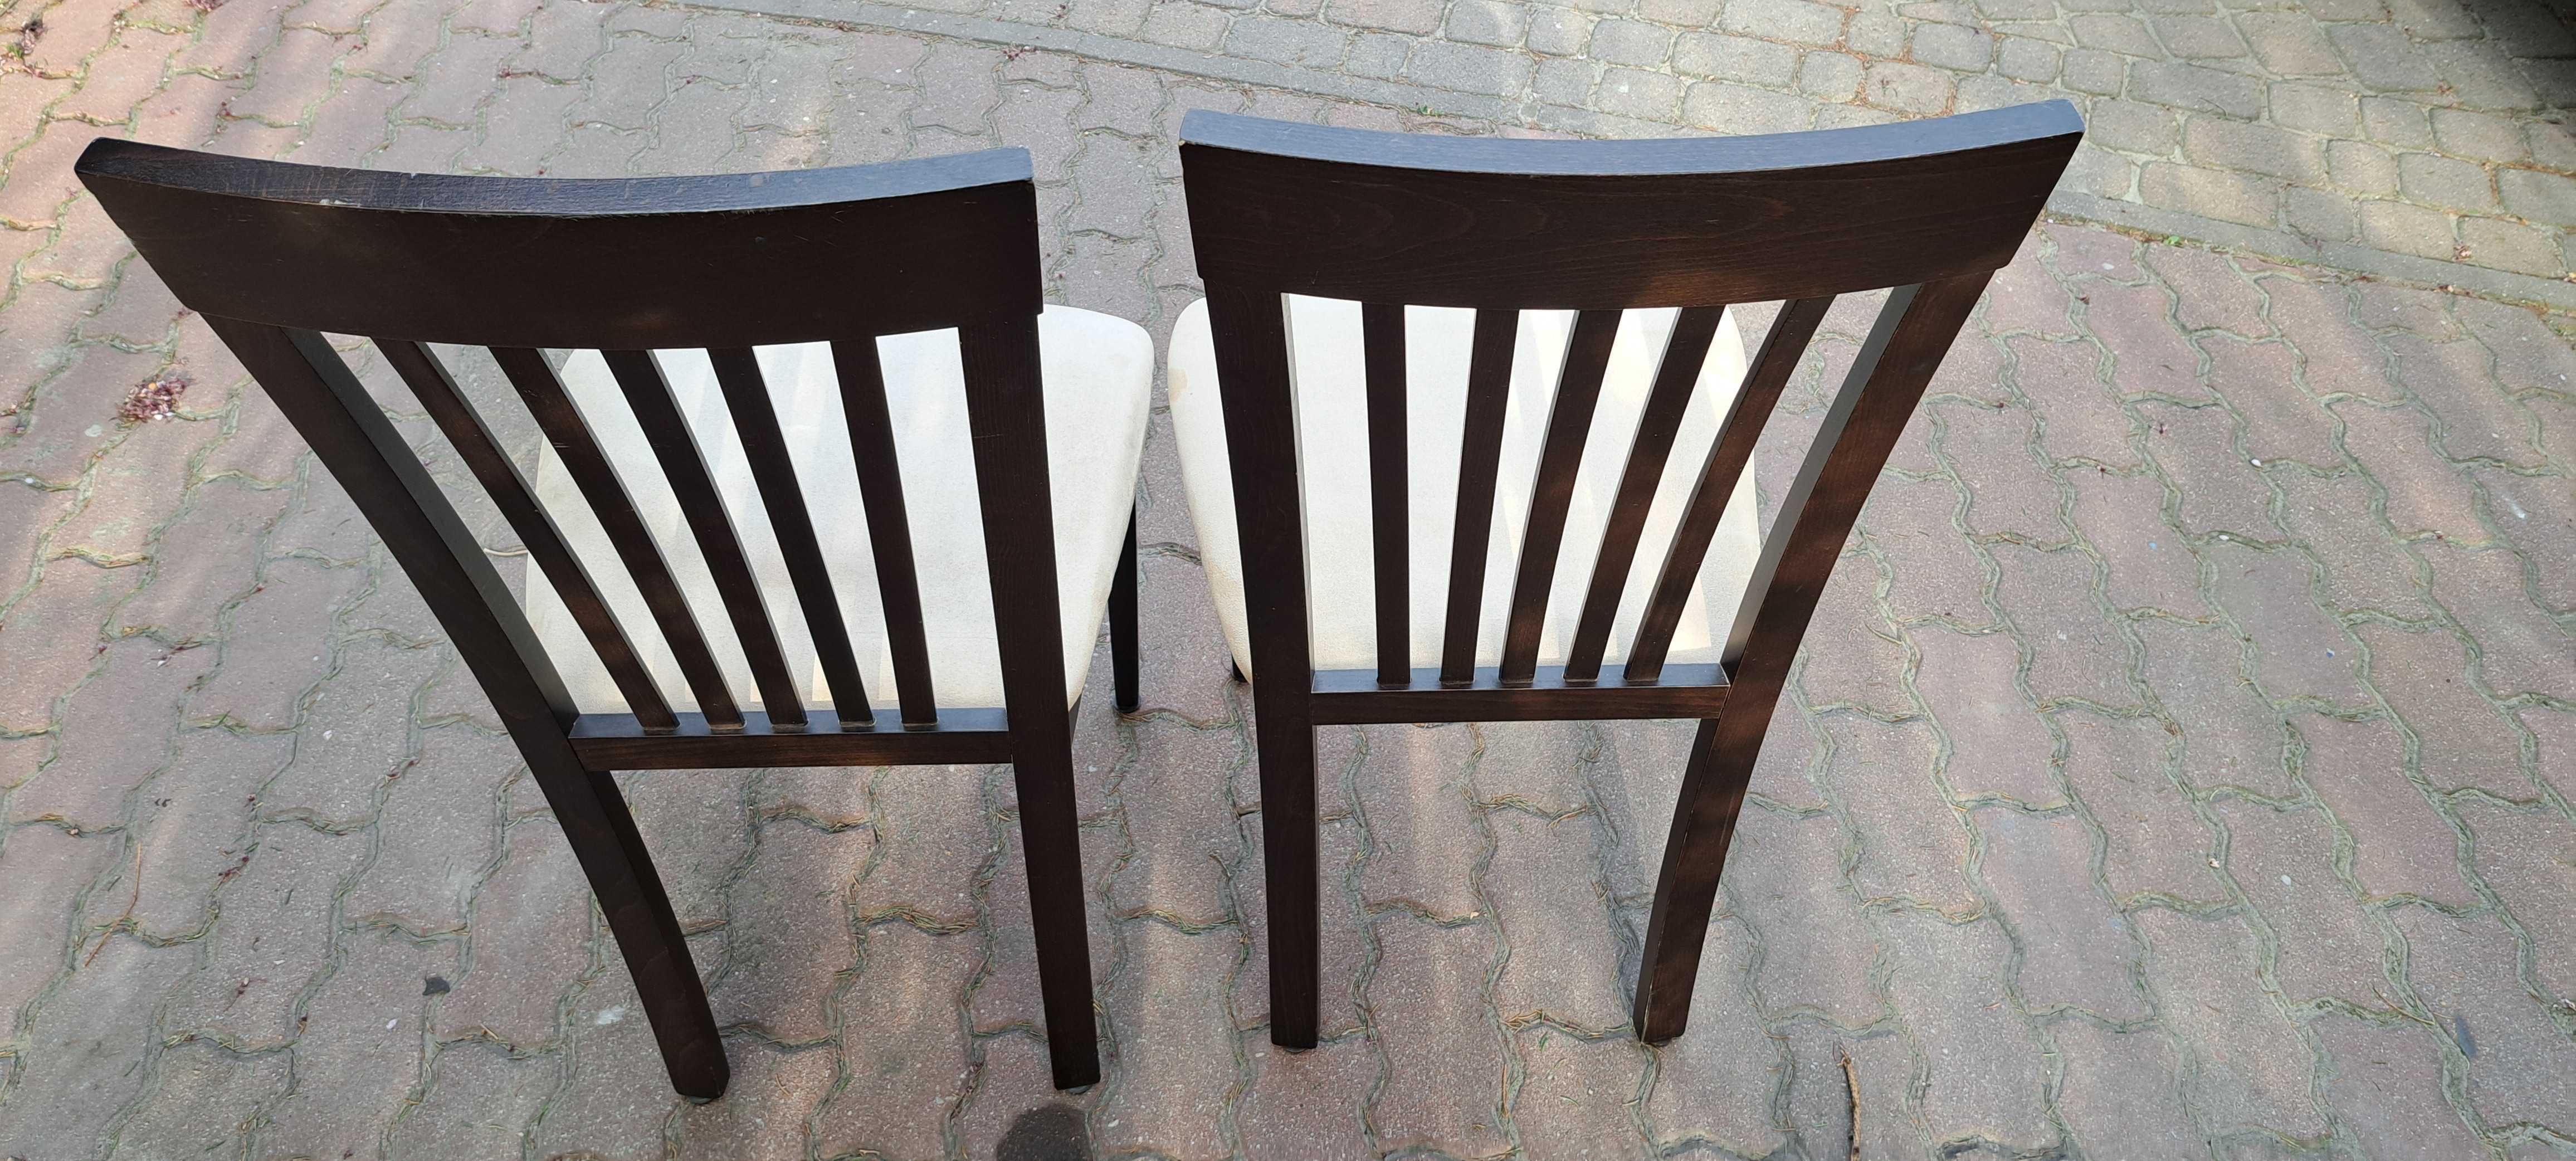 Krzesła kuchenne 2-sztuki za 50zl.